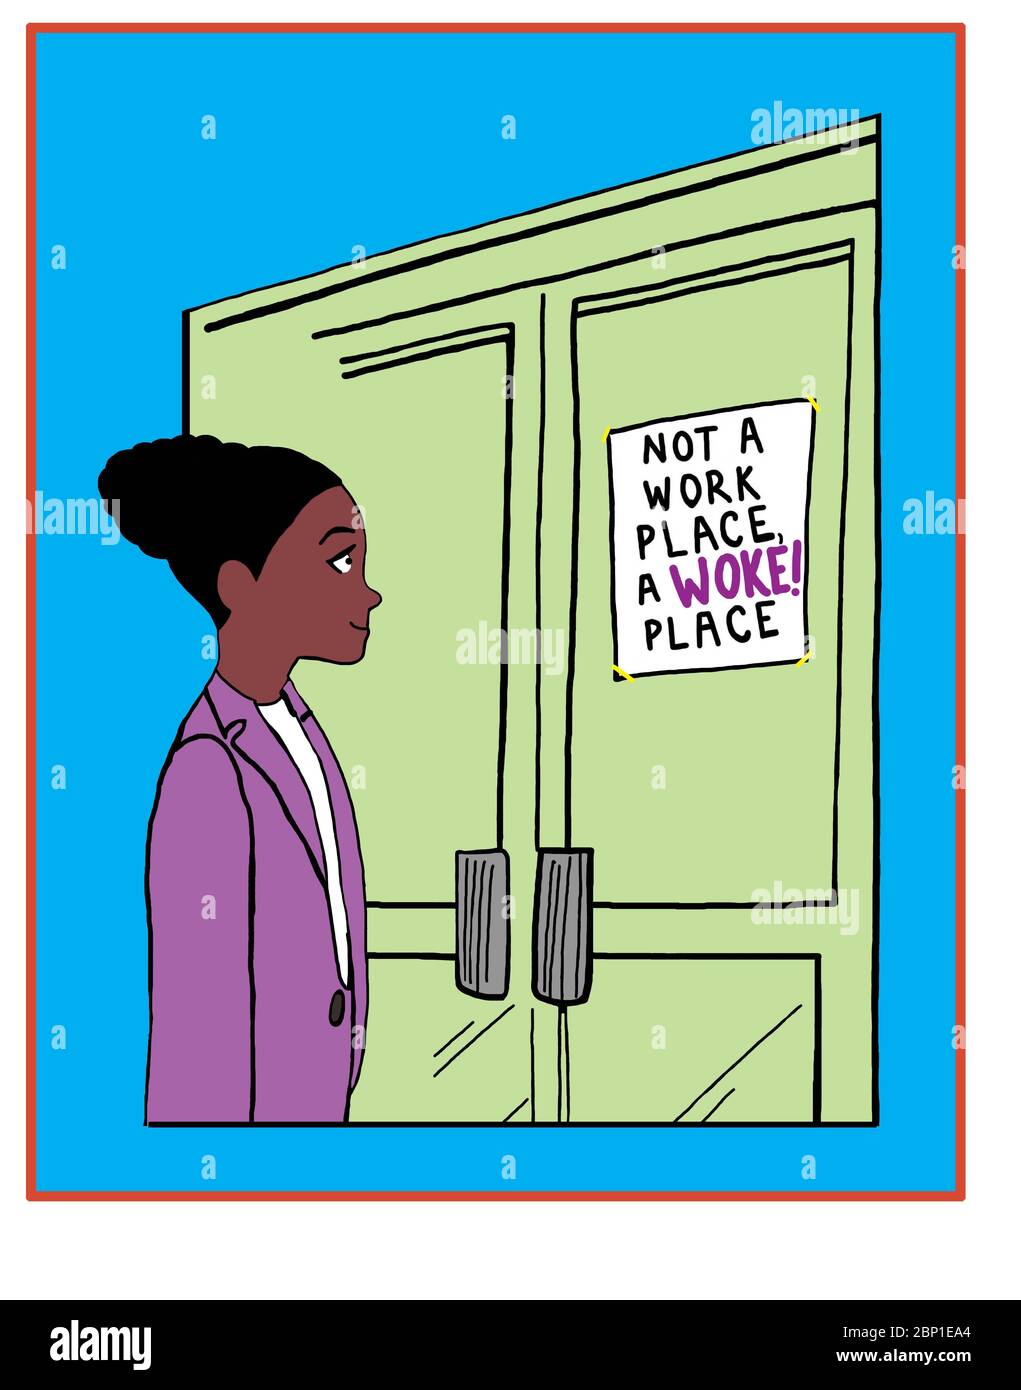 Caricature en couleur montrant une belle femme afro-américaine souriante en lisant un panneau indiquant que ce n'est pas un lieu de travail, mais un lieu de woke. Banque D'Images